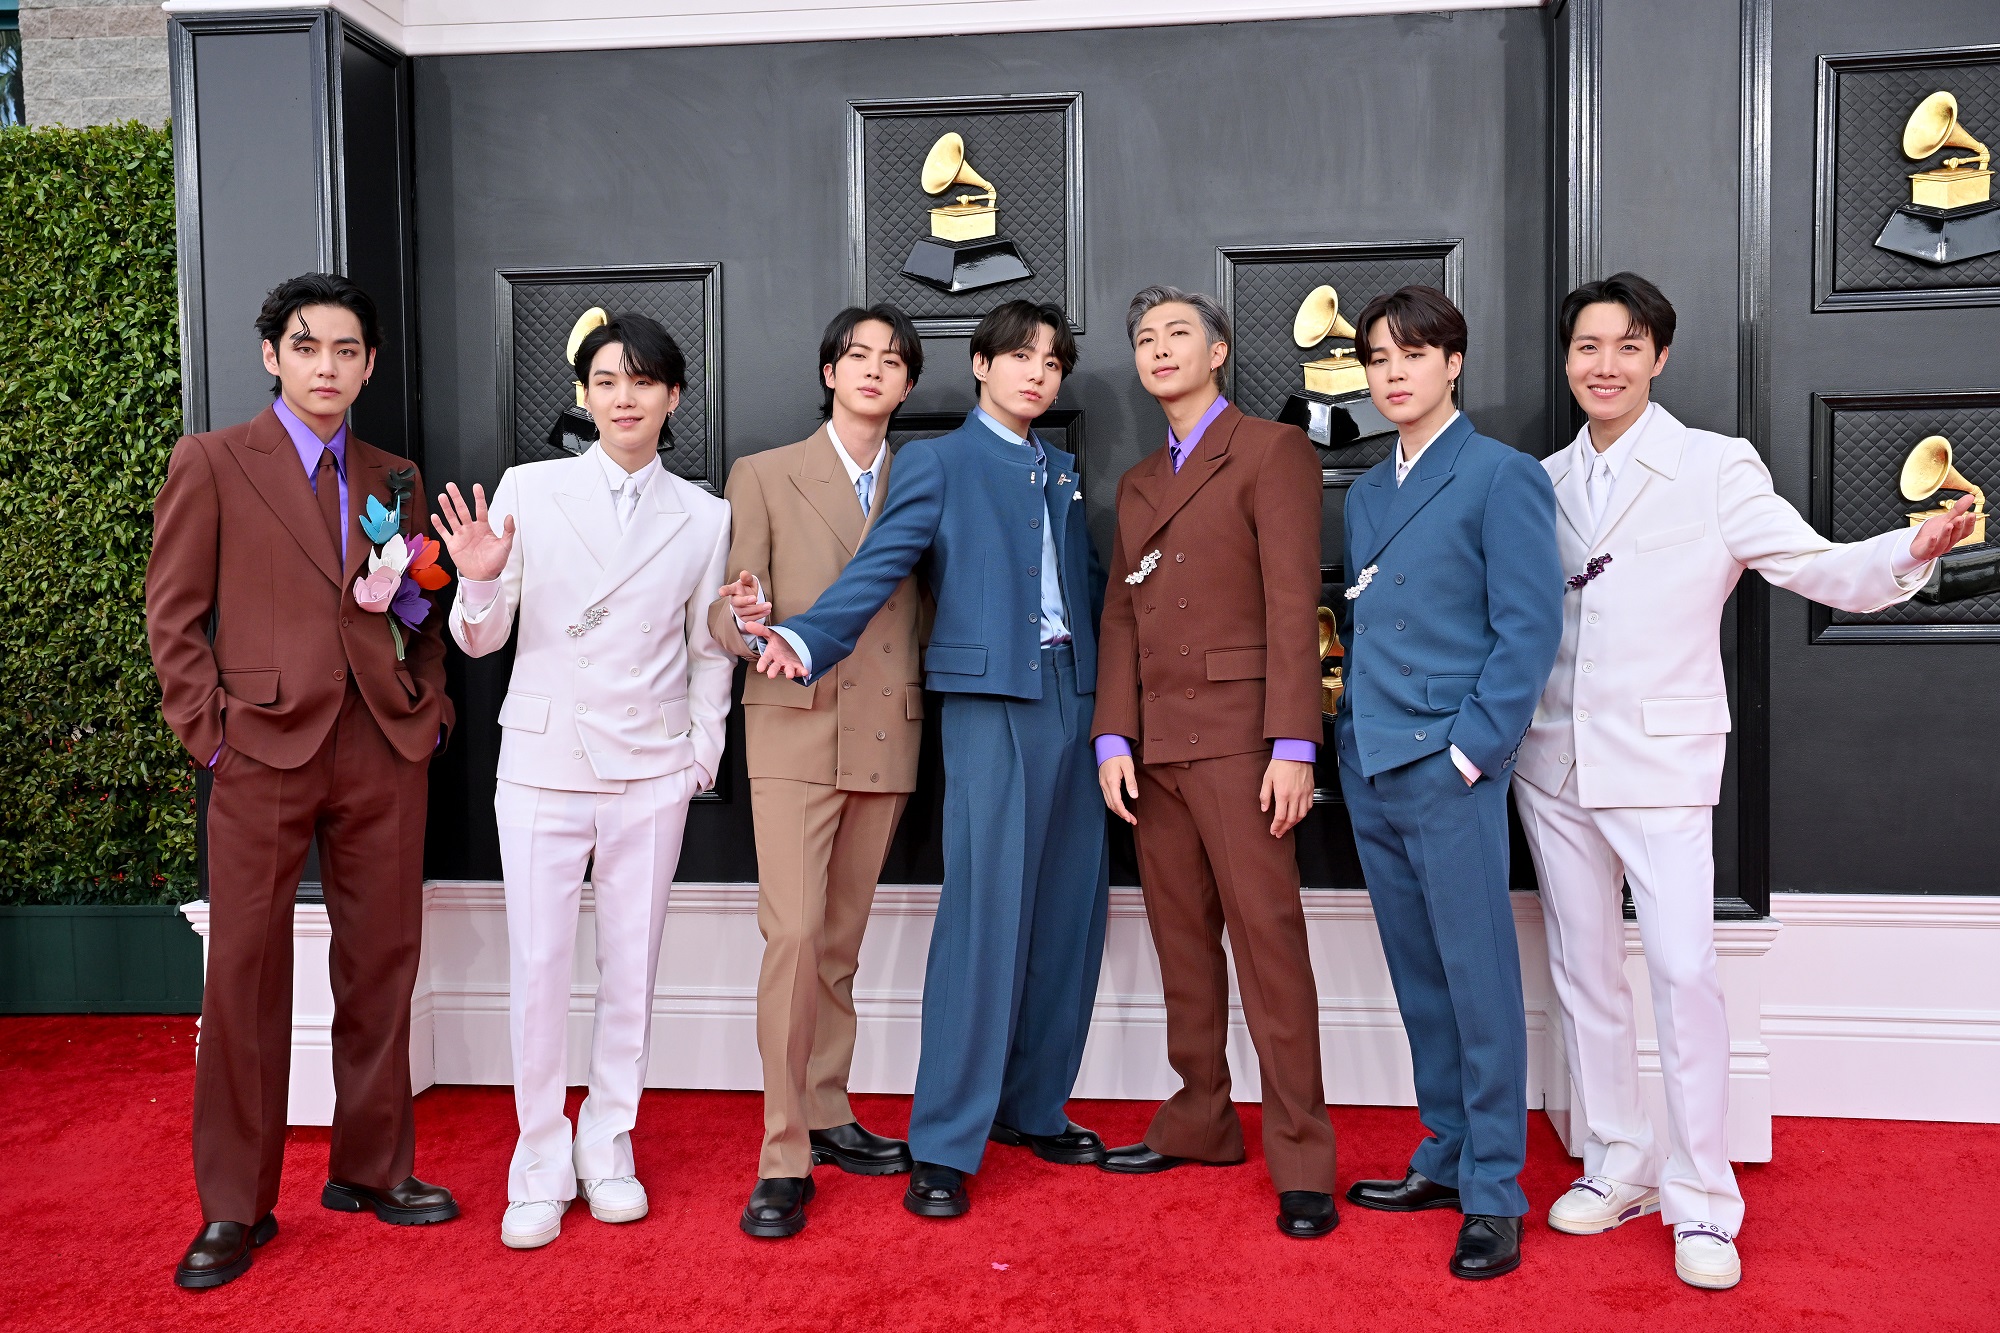 V, Suga, Jin, Jungkook, RM, Jimin, and J-Hope of BTS at the 2022 Grammy Awards